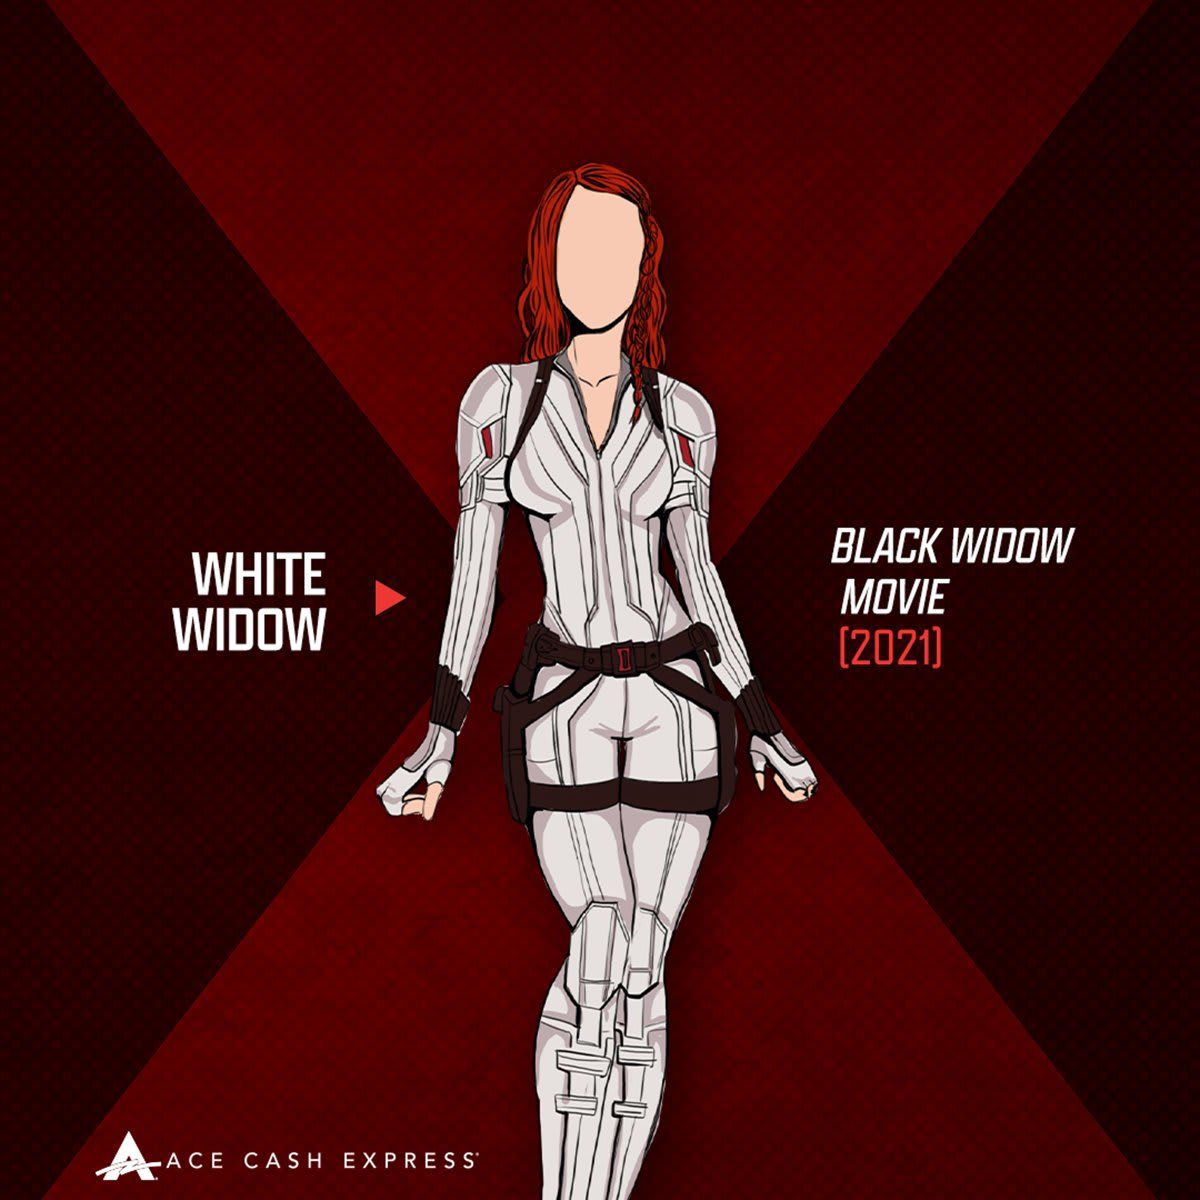 White Widow (Black Widow Movie)